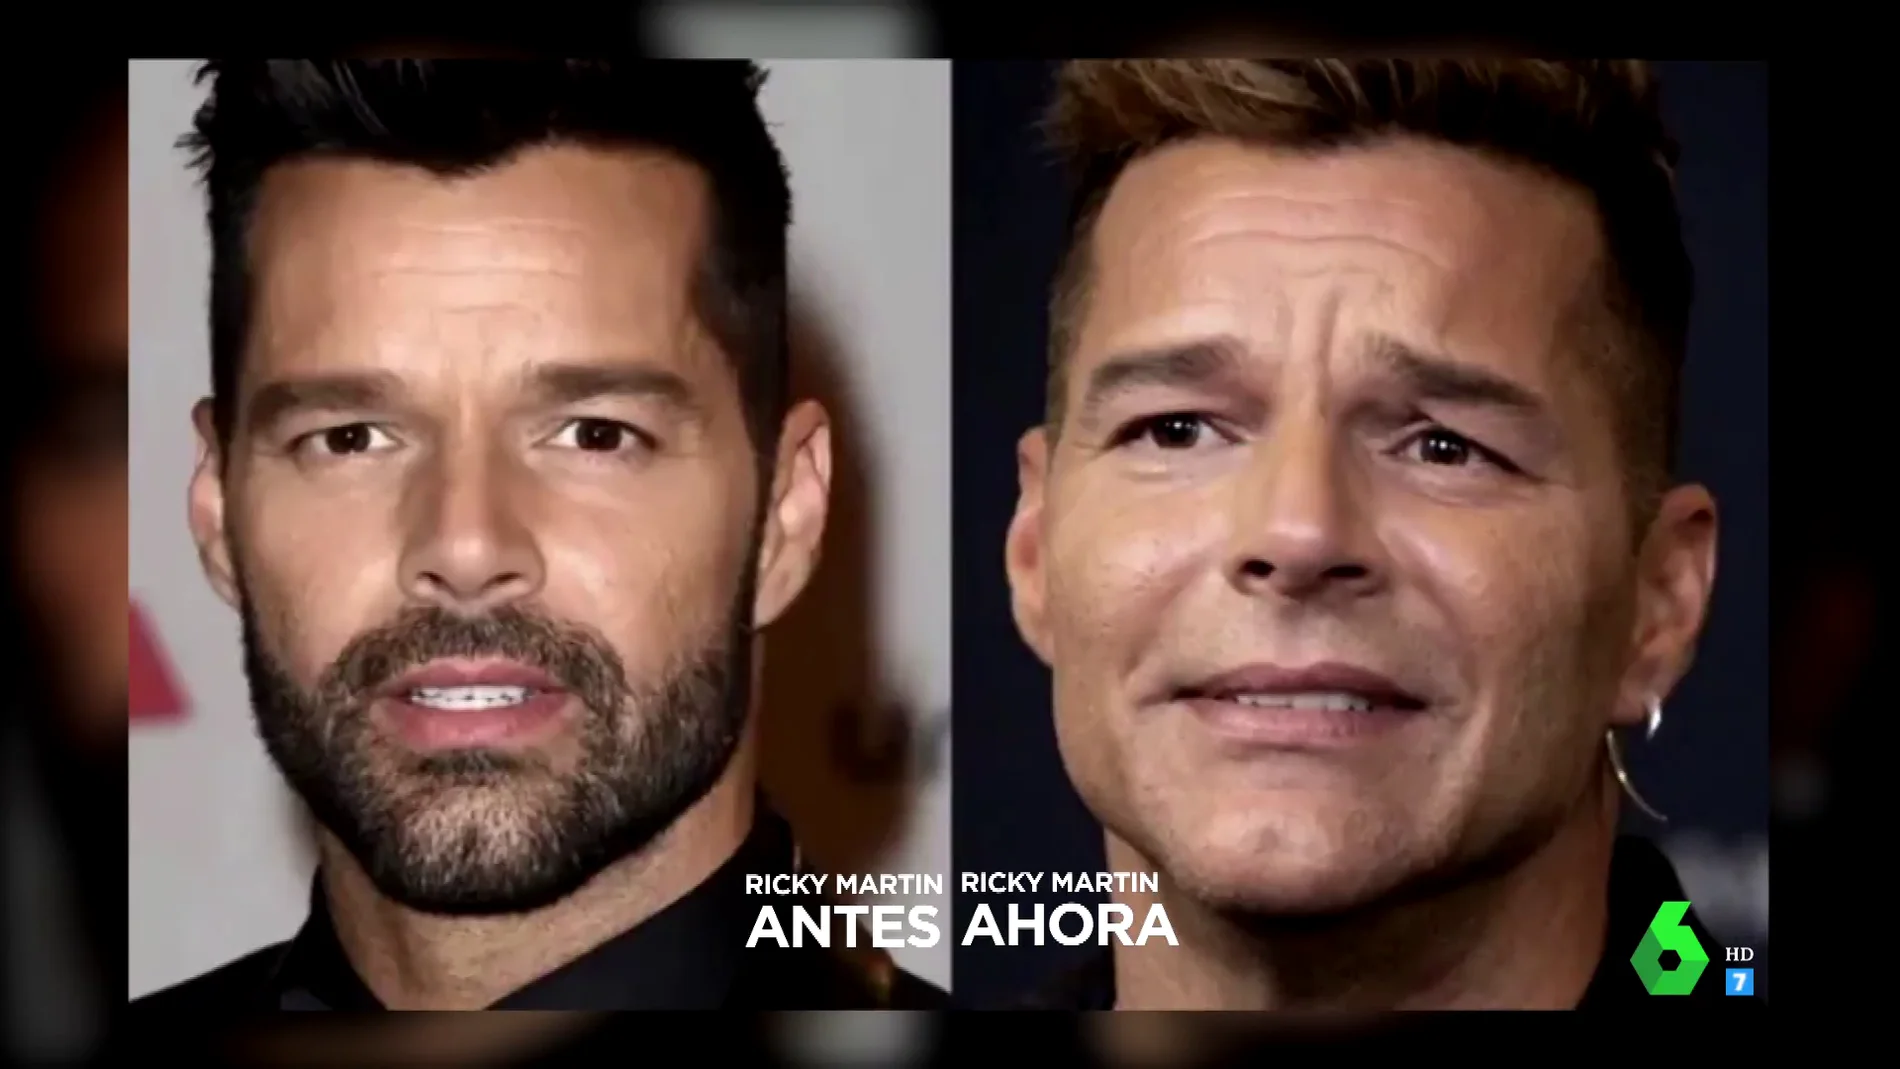 Ricky Martin explica lo que hay detrás de su cambio físico: "Creo que algunos de ustedes están muy preocupados"